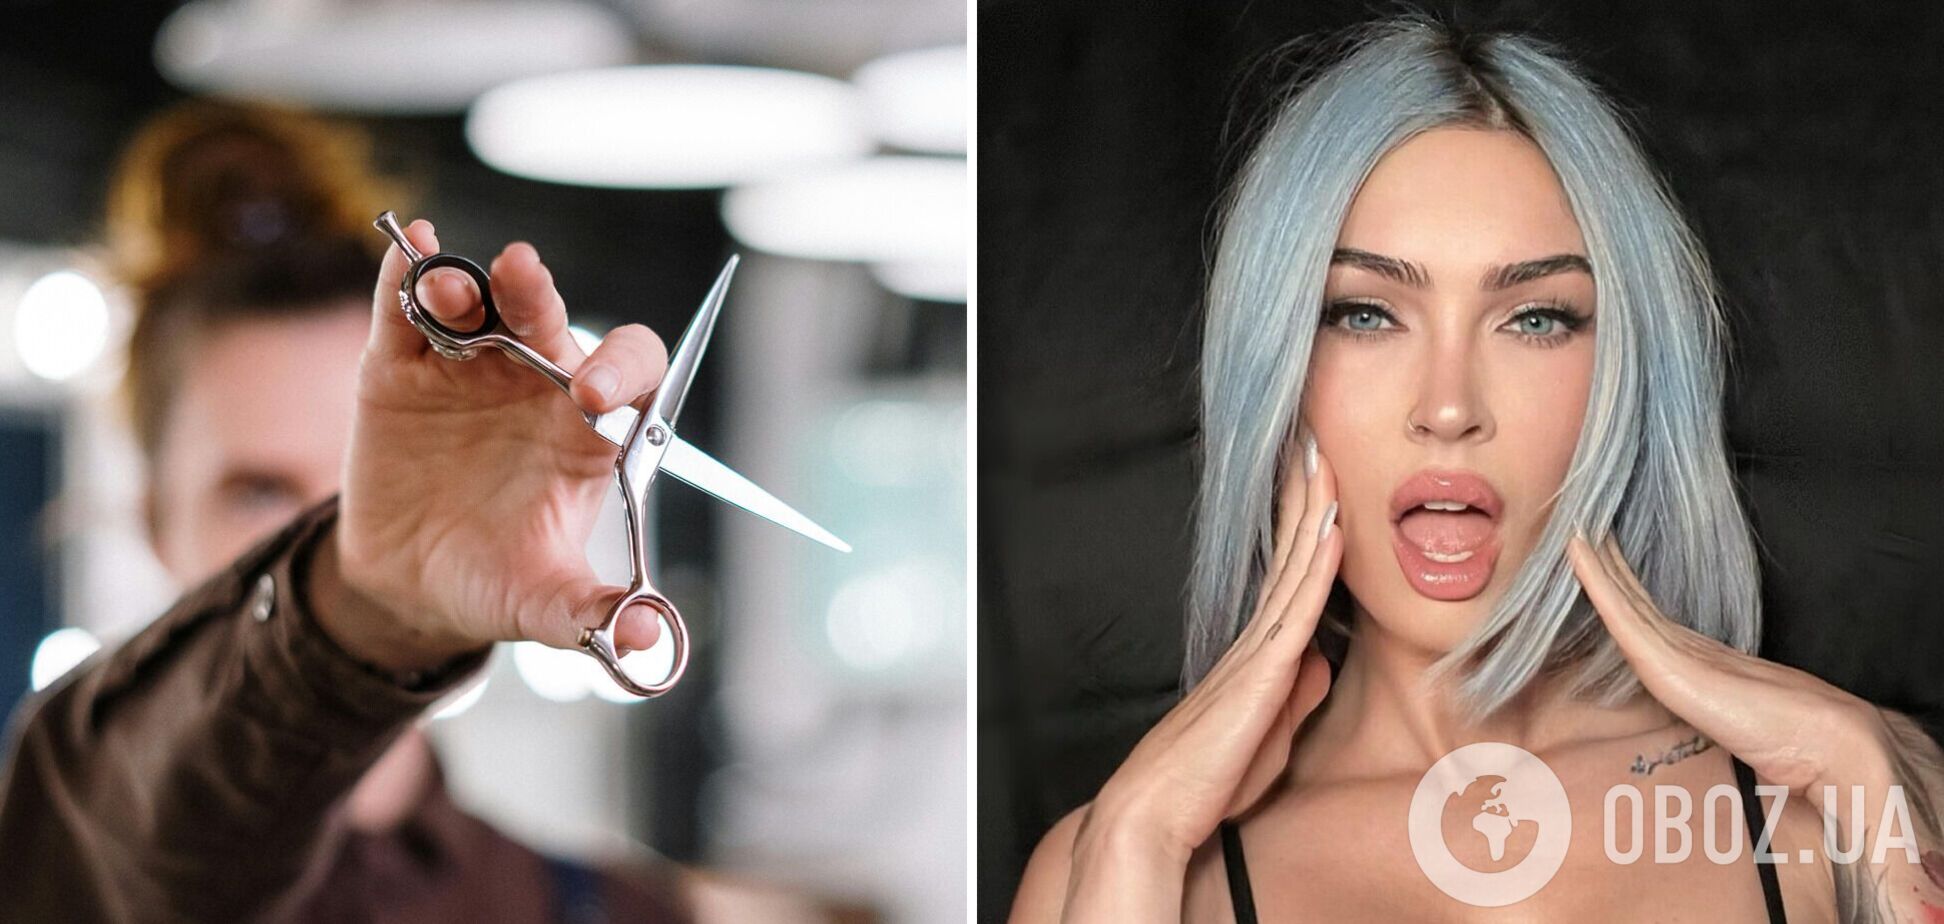 Меган Фокс показала смелую стрижку и неожиданный цвет волос: что за техника окрашивания 'голубой джинс'